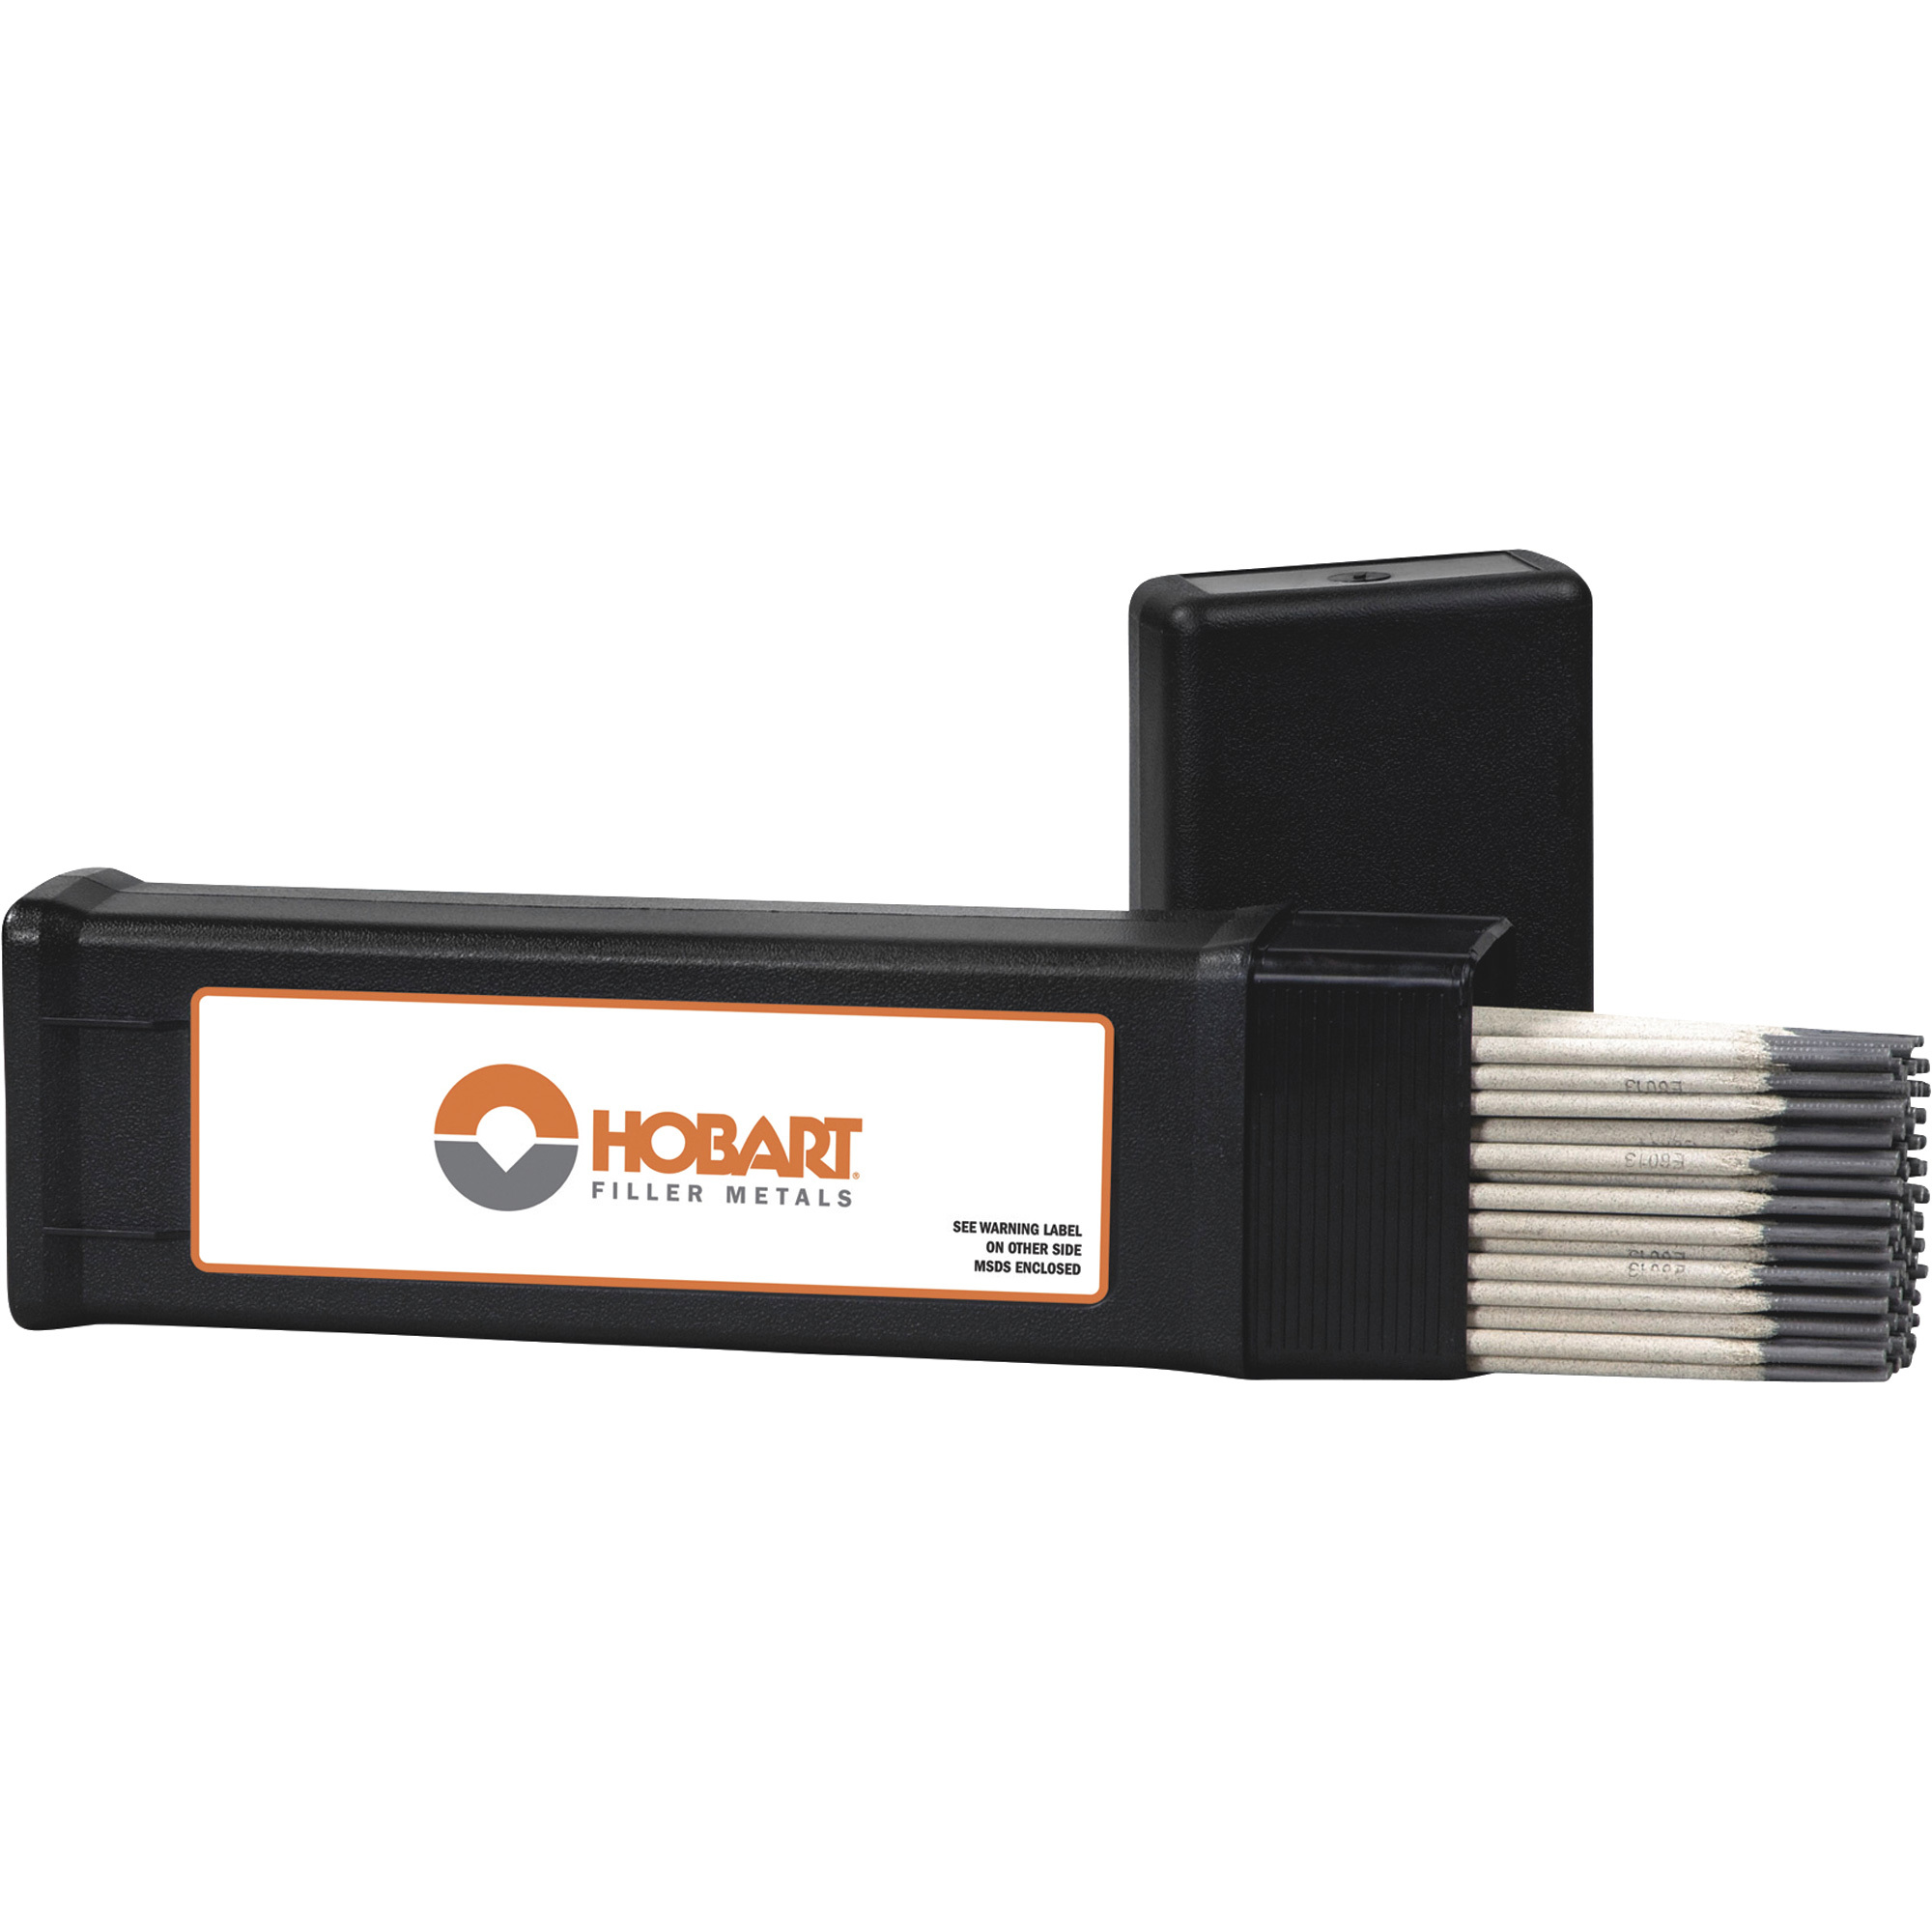 Hobart Filler Metals Stick Welding Electrodes â 6013, 1/8Inch Diameter x 14Inch L, 5-Lb. Carton, Model 770469